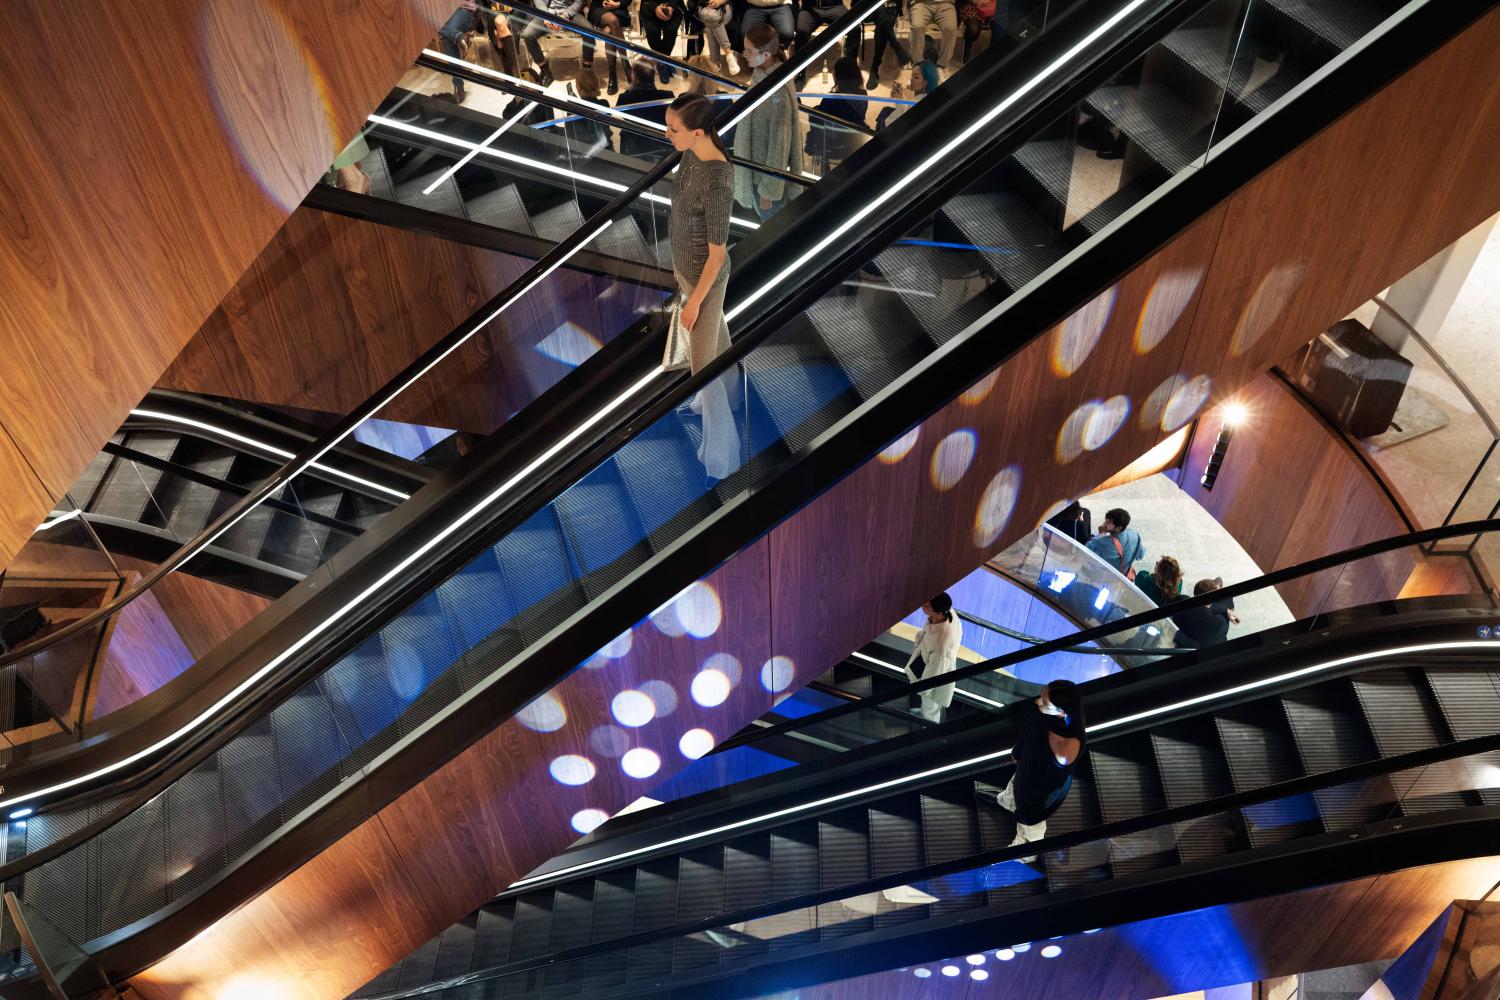 Einblick in die Modenschau zur Eröffnung der neuen Rolltreppe im KaDeWe Berlin, die vom Architekturbüro OMA geplant wurde